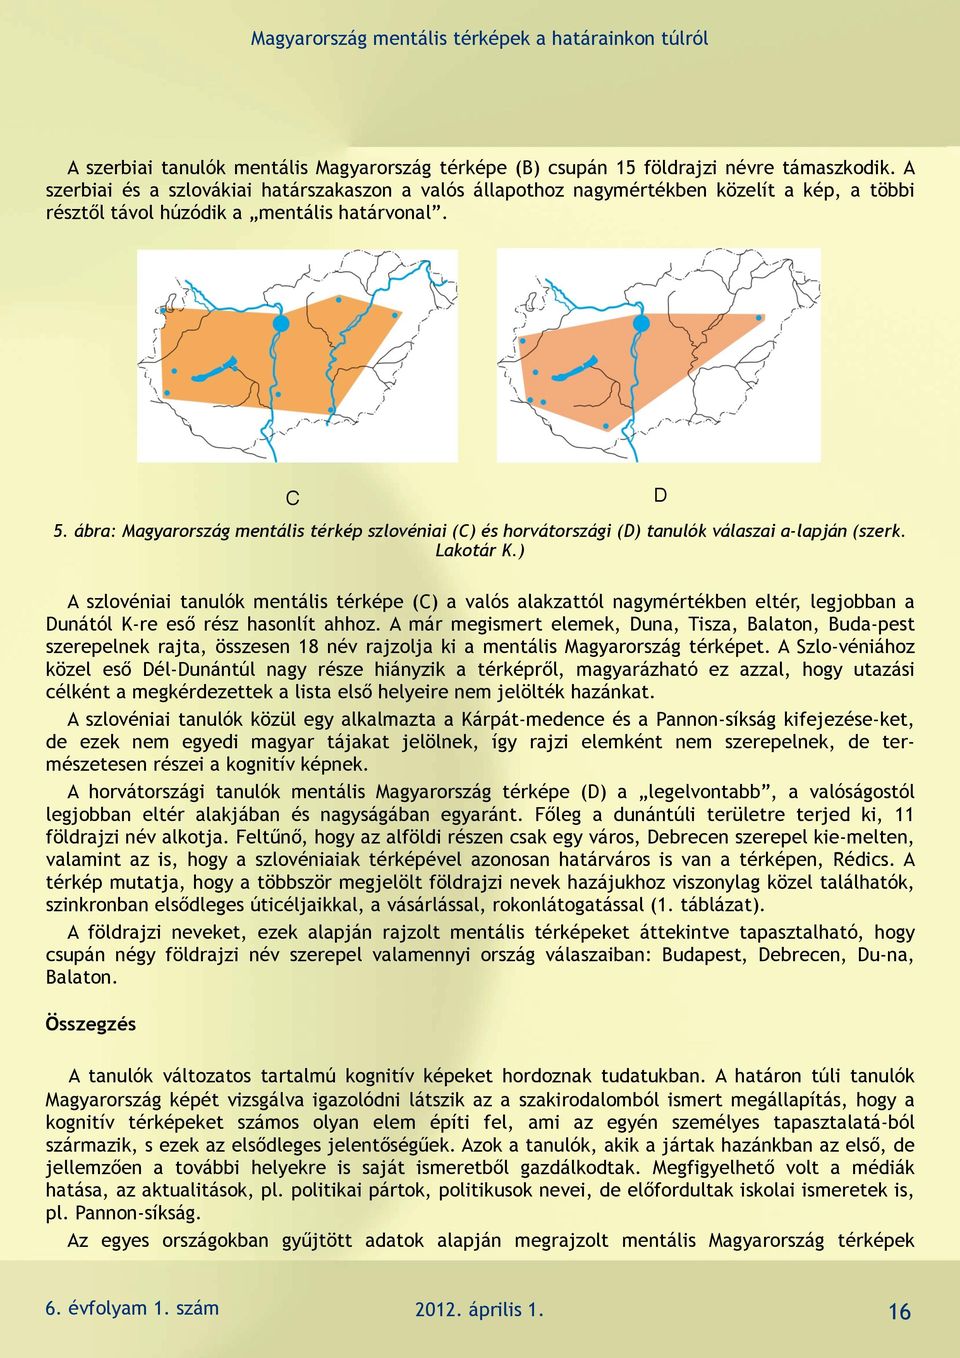 ábra: Magyarország mentális térkép szlovéniai (C) és horvátországi (D) tanulók válaszai a-lapján (szerk. Lakotár K.